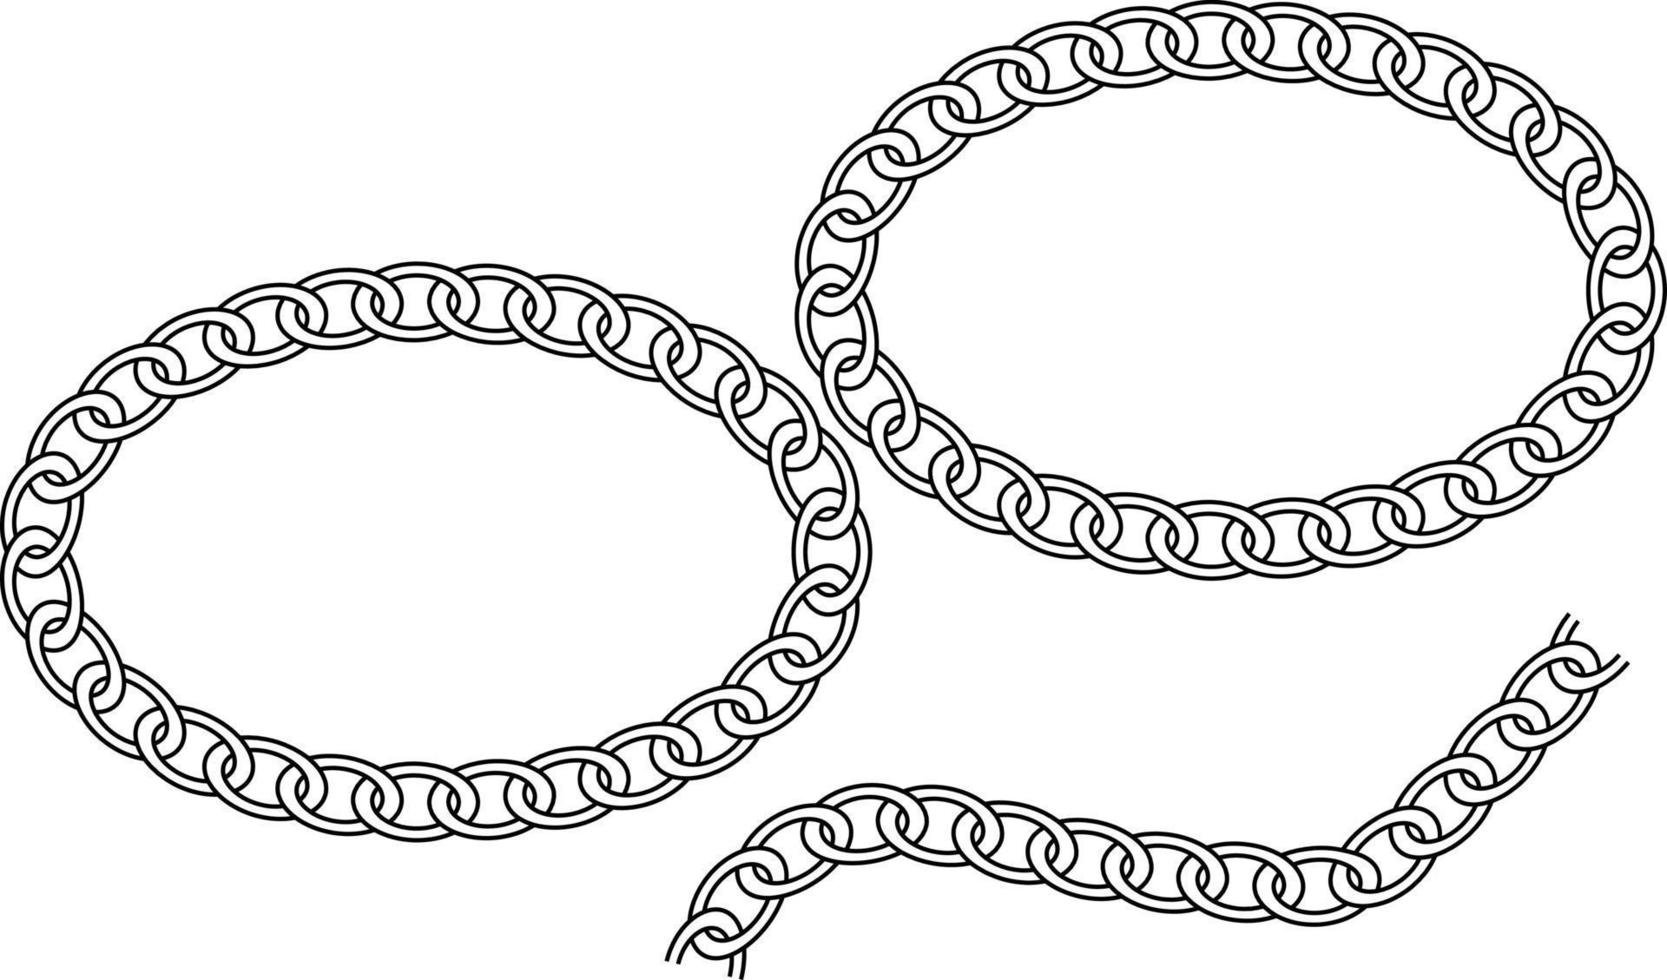 chain shape black art design vector